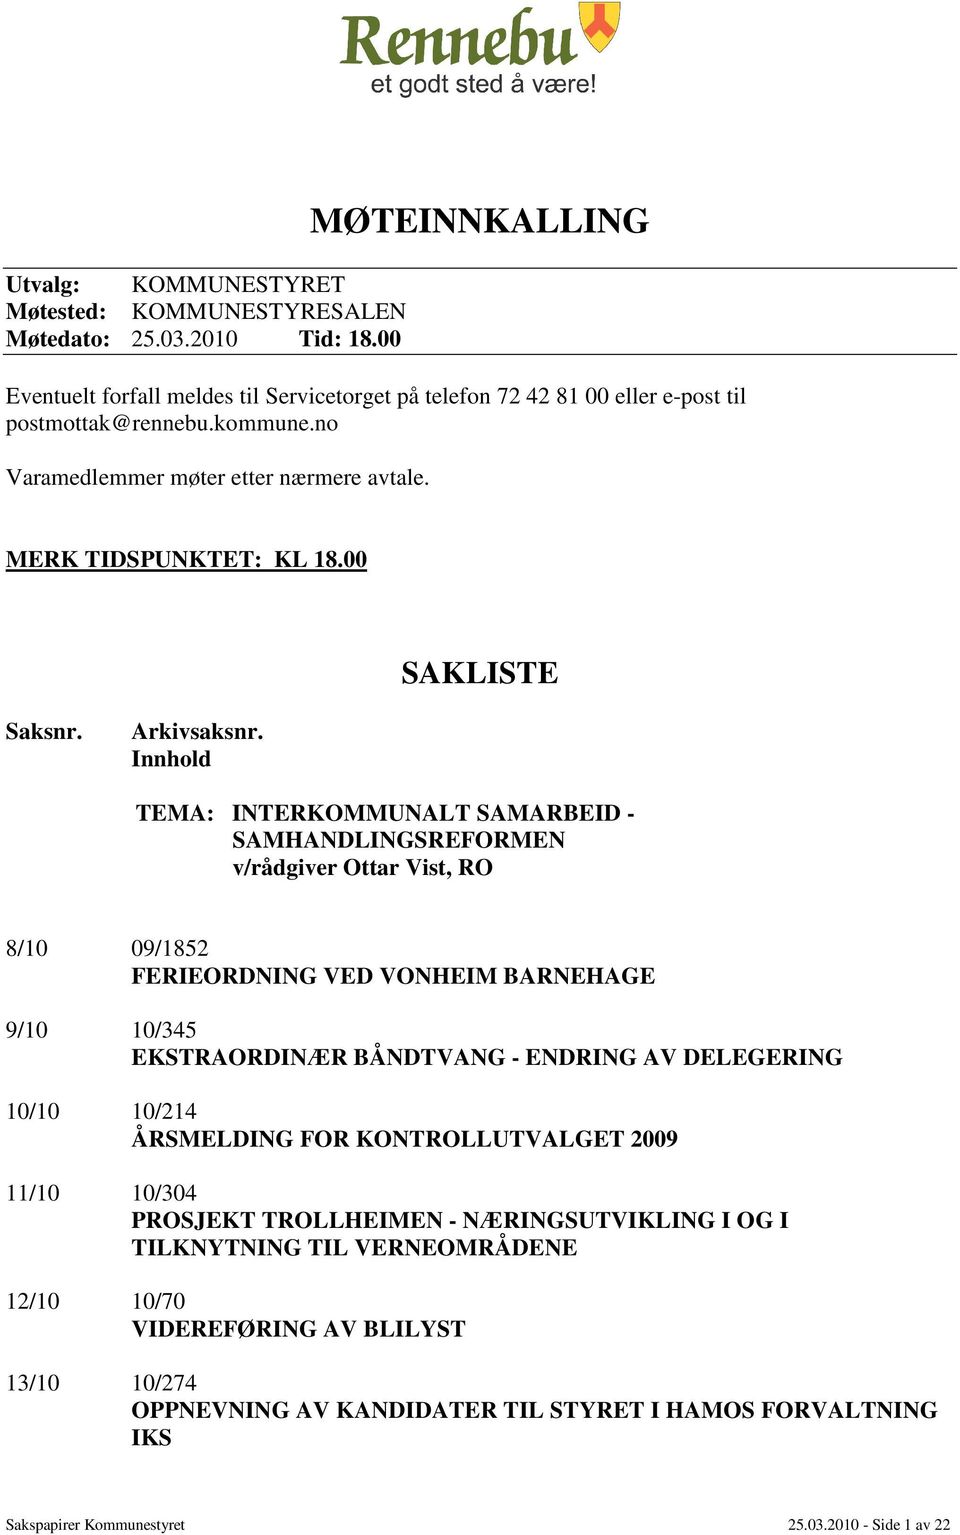 Innhold TEMA: INTERKOMMUNALT SAMARBEID - SAMHANDLINGSREFORMEN v/rådgiver Ottar Vist, RO 8/10 09/1852 FERIEORDNING VED VONHEIM BARNEHAGE 9/10 10/345 EKSTRAORDINÆR BÅNDTVANG - ENDRING AV DELEGERING